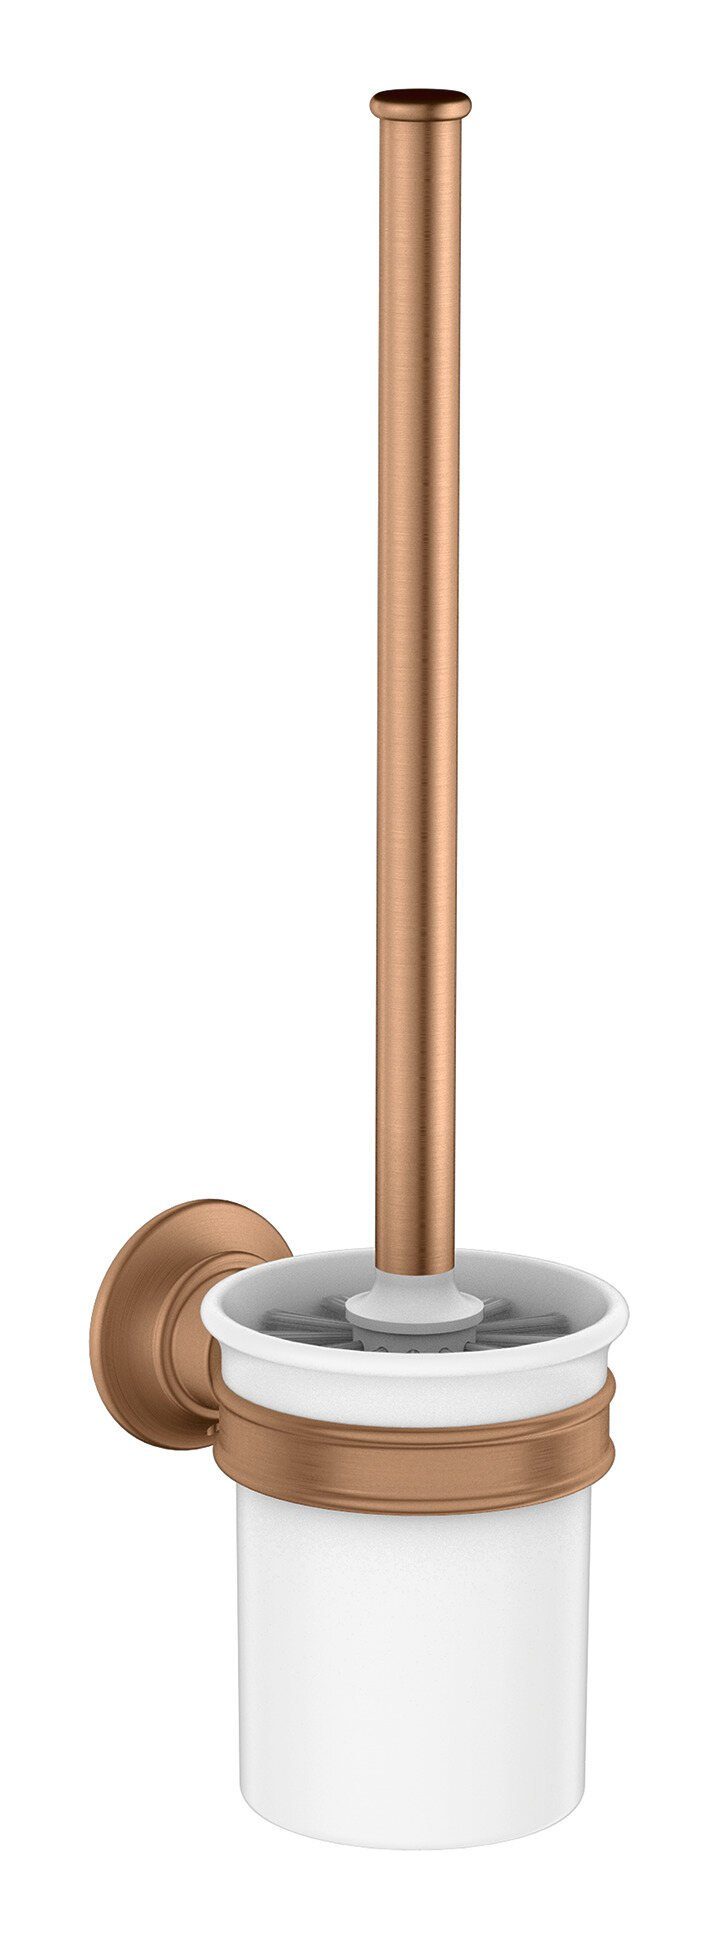 hansgrohe WC-Garnitur Axor Montreux, Toilettenbürstengarnitur Bronze Brushed 